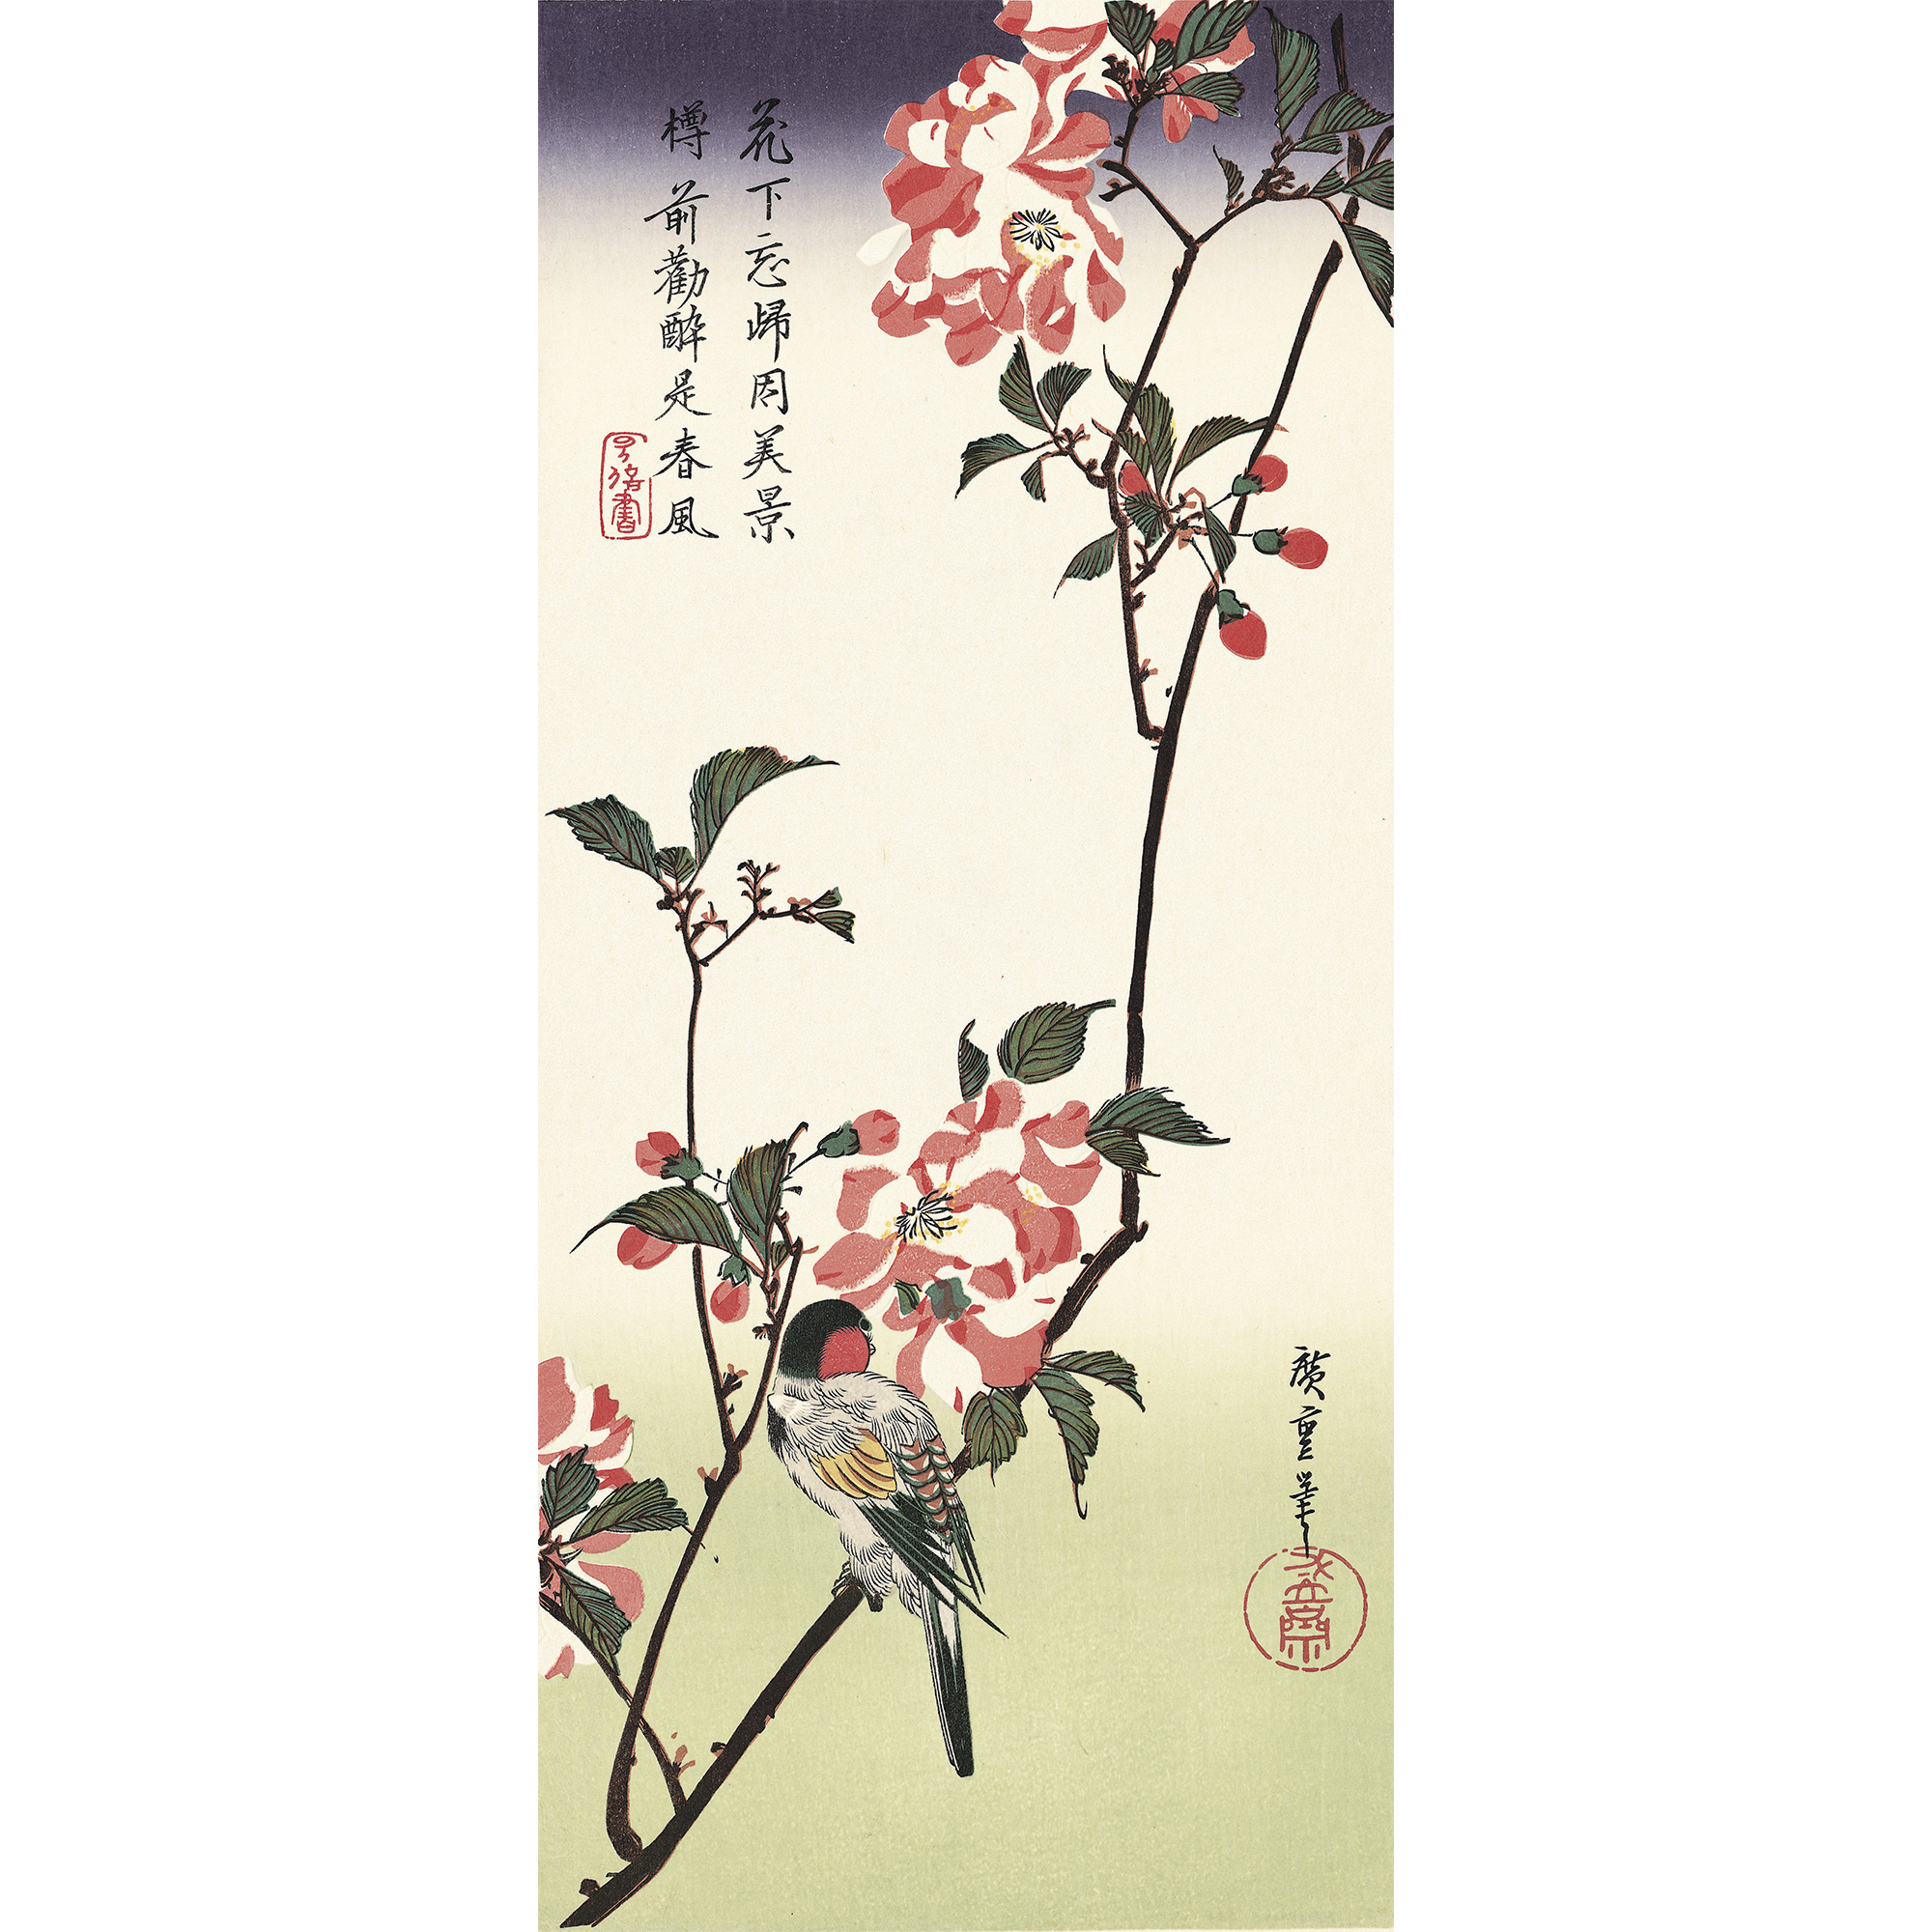 歌川広重「八重桜に小鳥」アダチ版復刻浮世絵